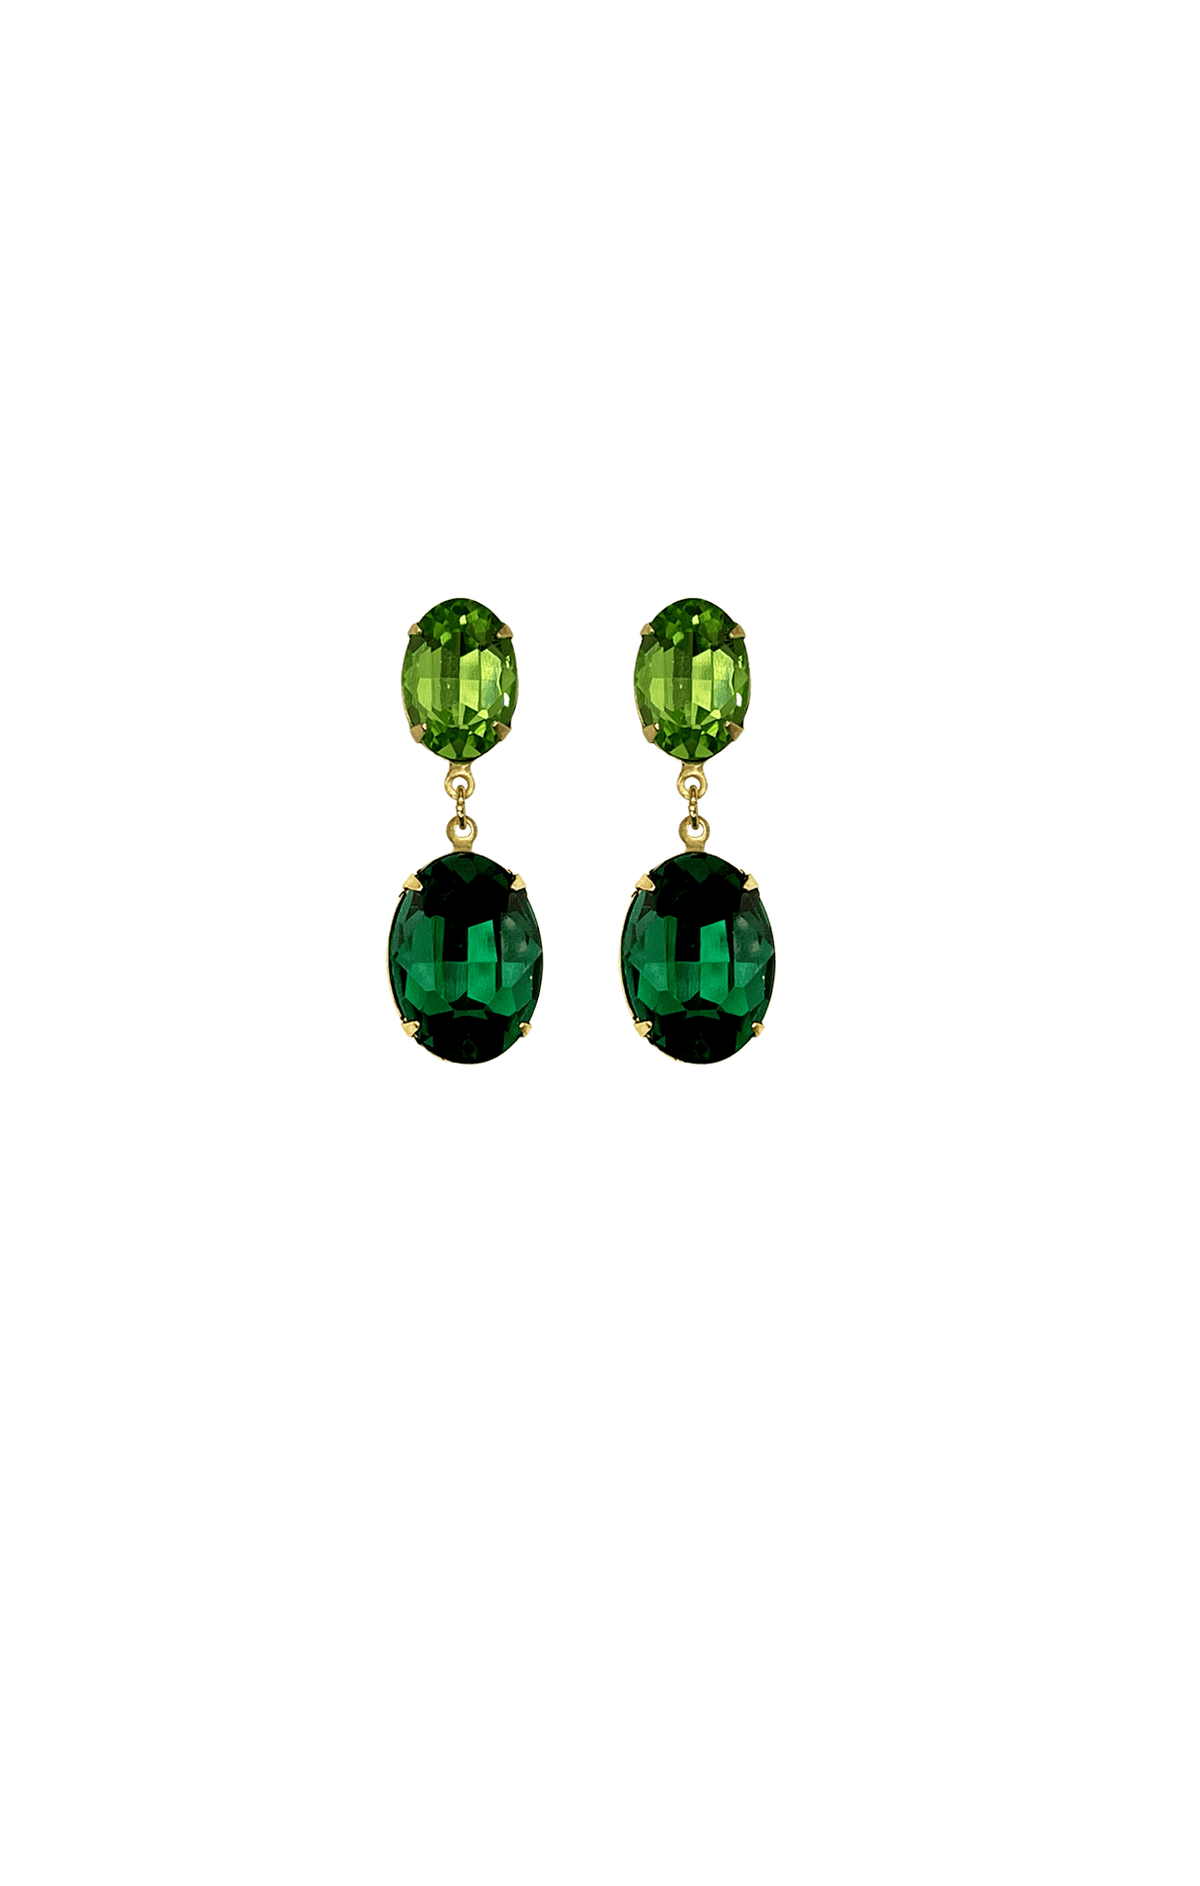 ACCESSORIES Earrings One Size / Green EDEN DROP EARRING IN PERIDOT EMERALD